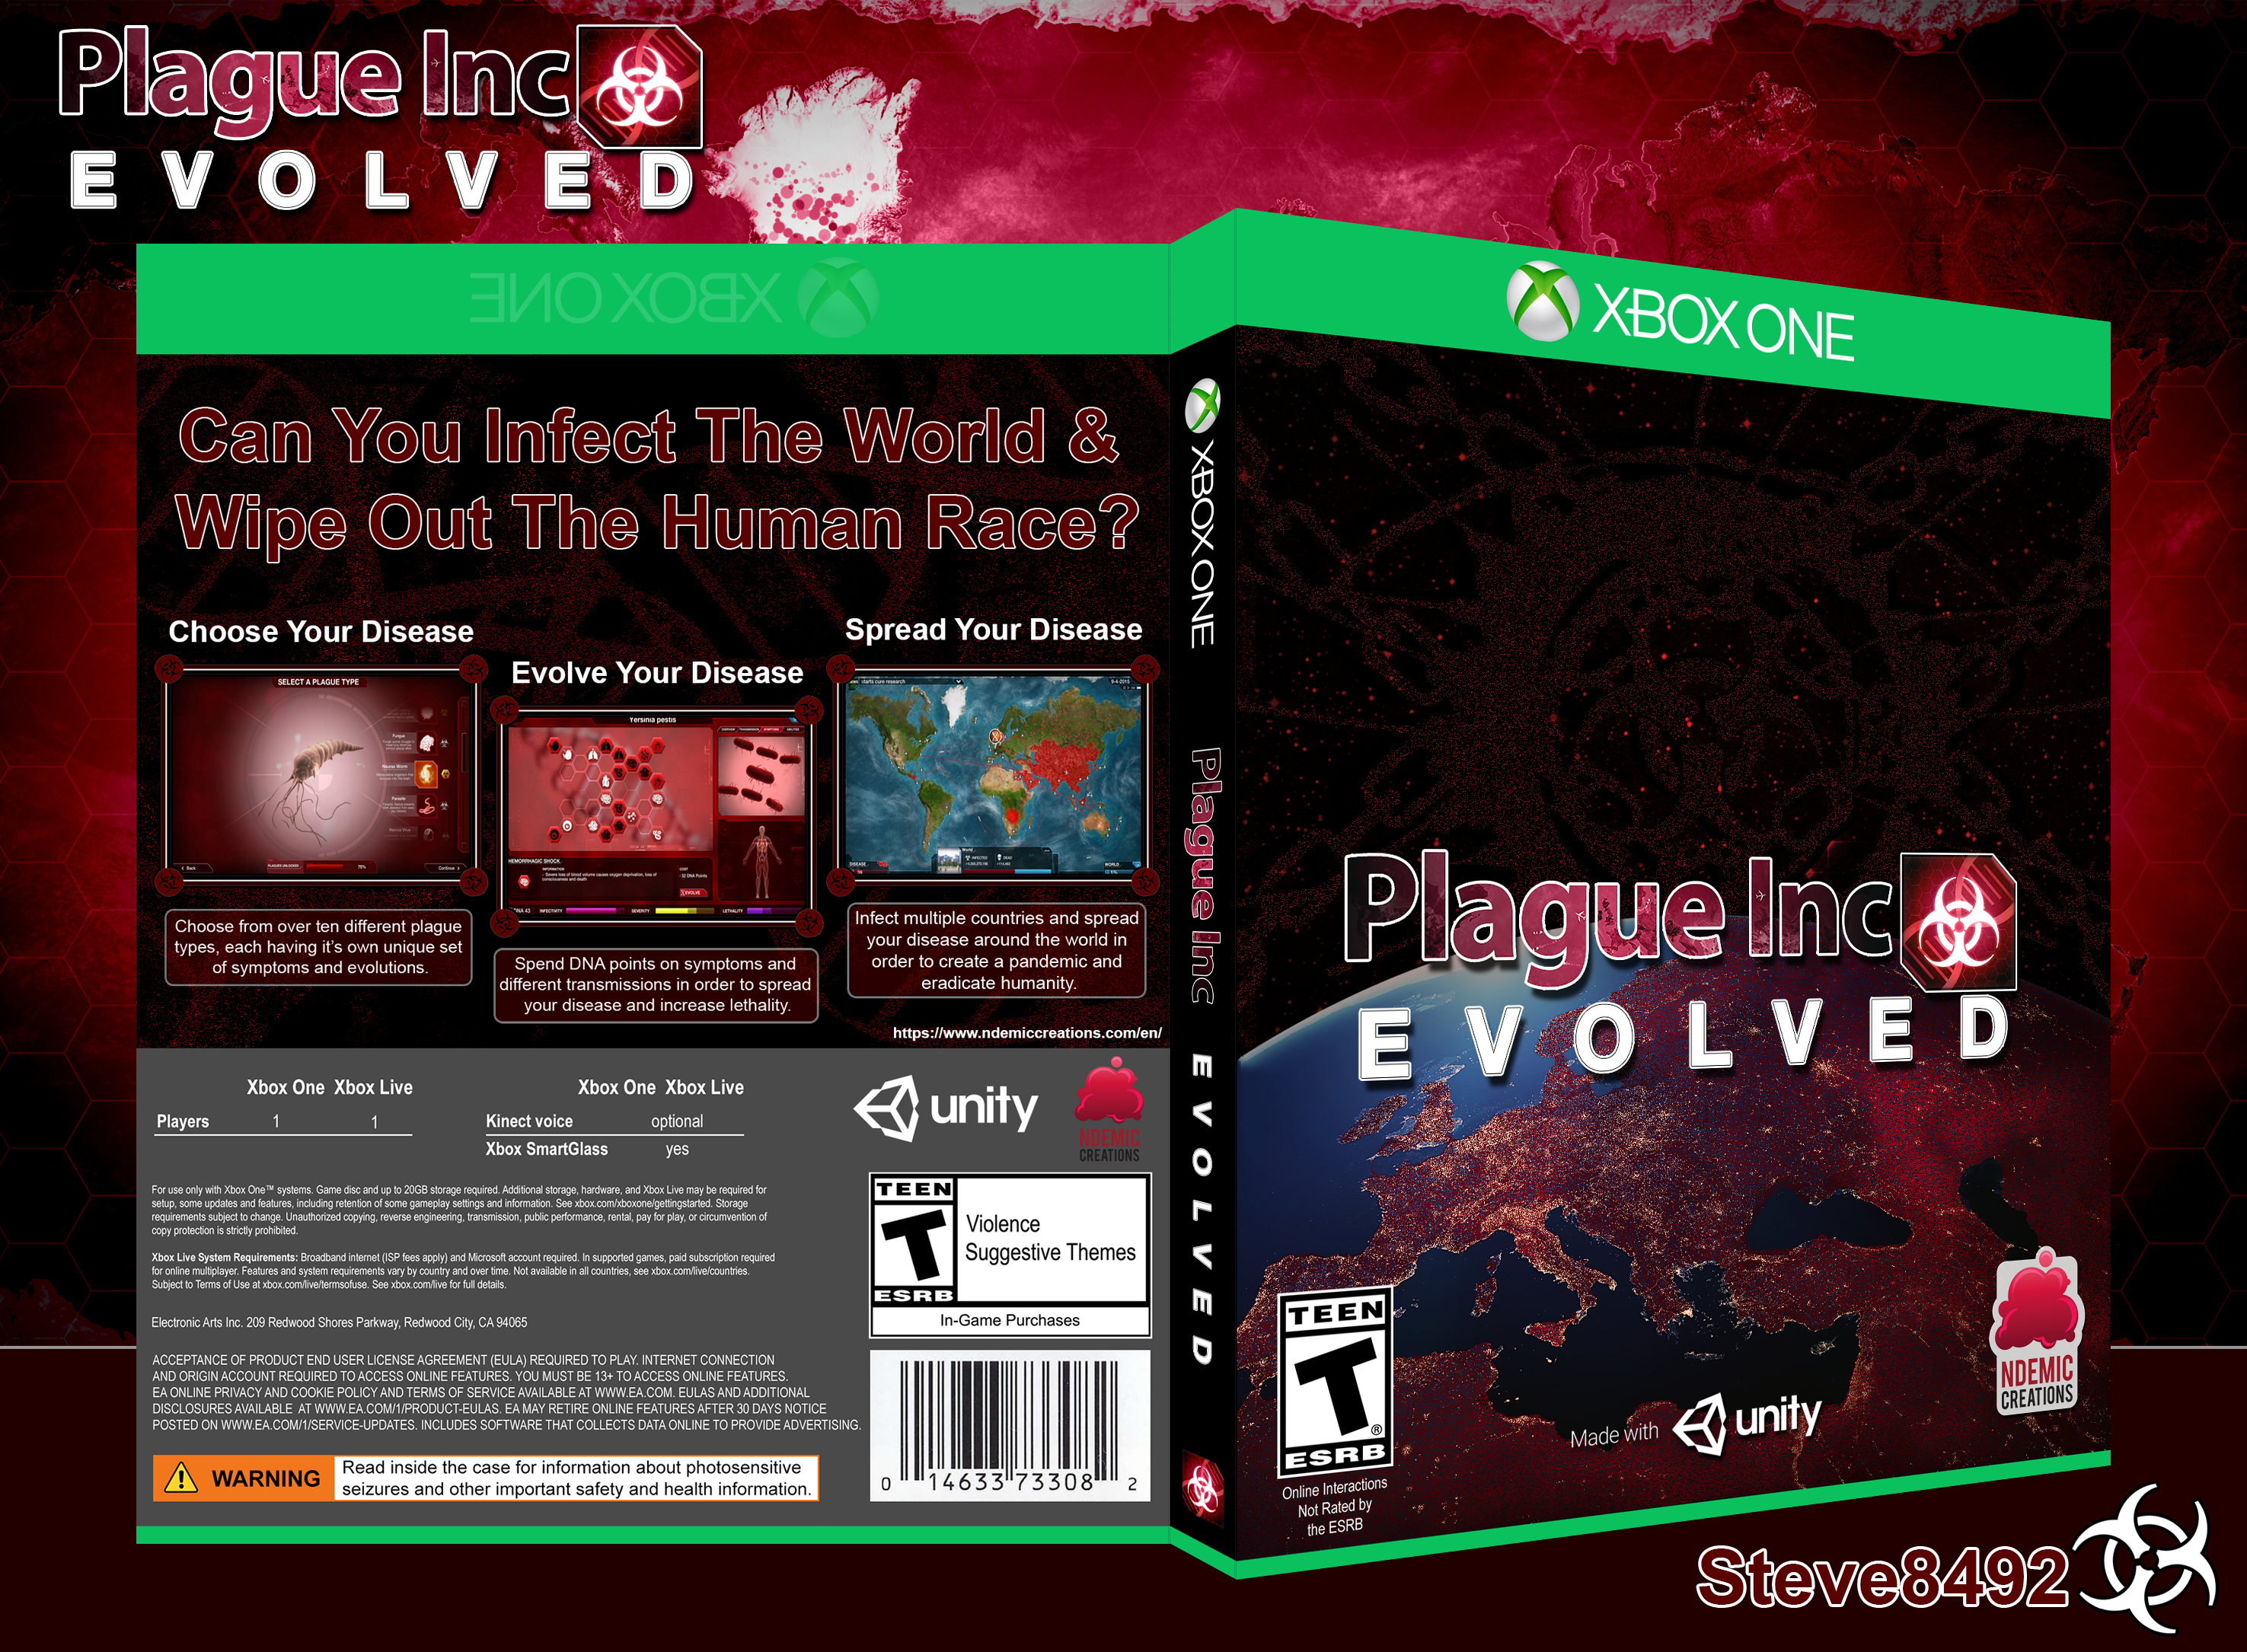 Plague Inc. Evolved box cover